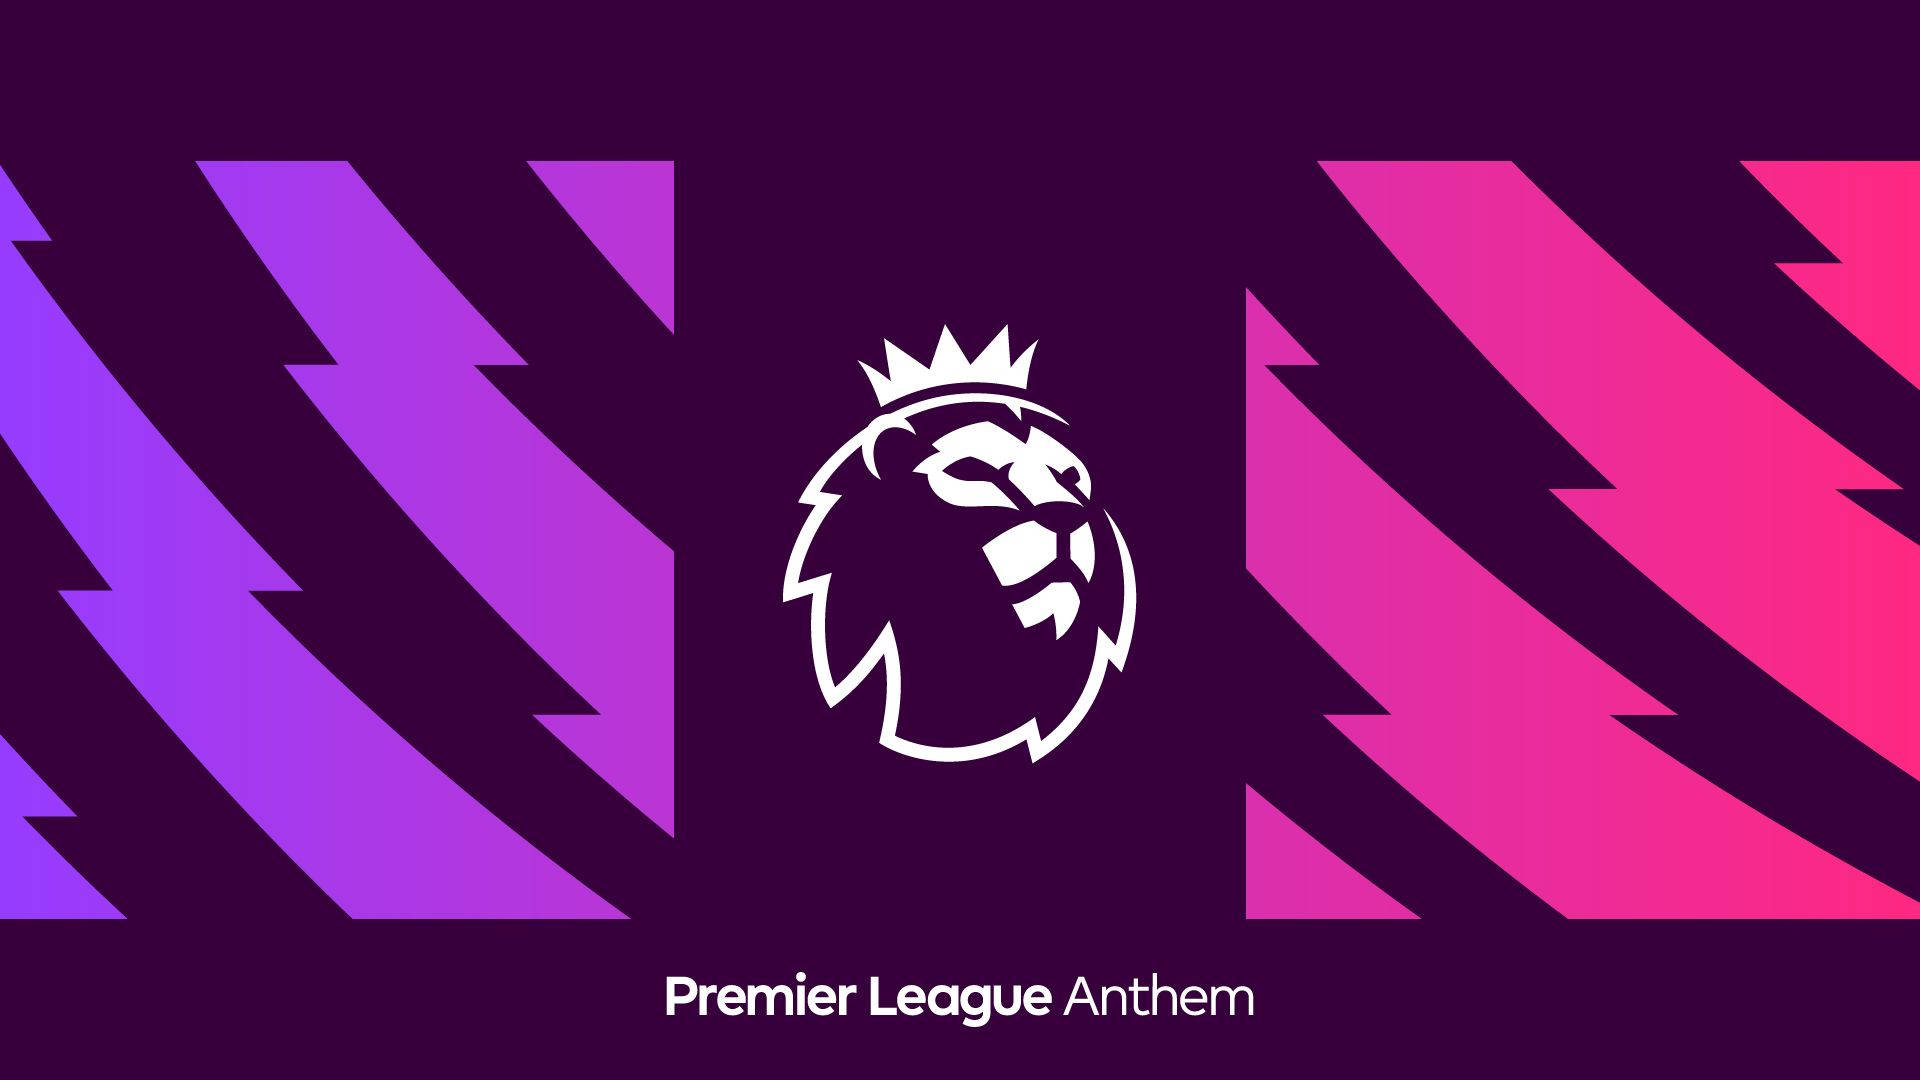 Premier League Lion With Crown Background